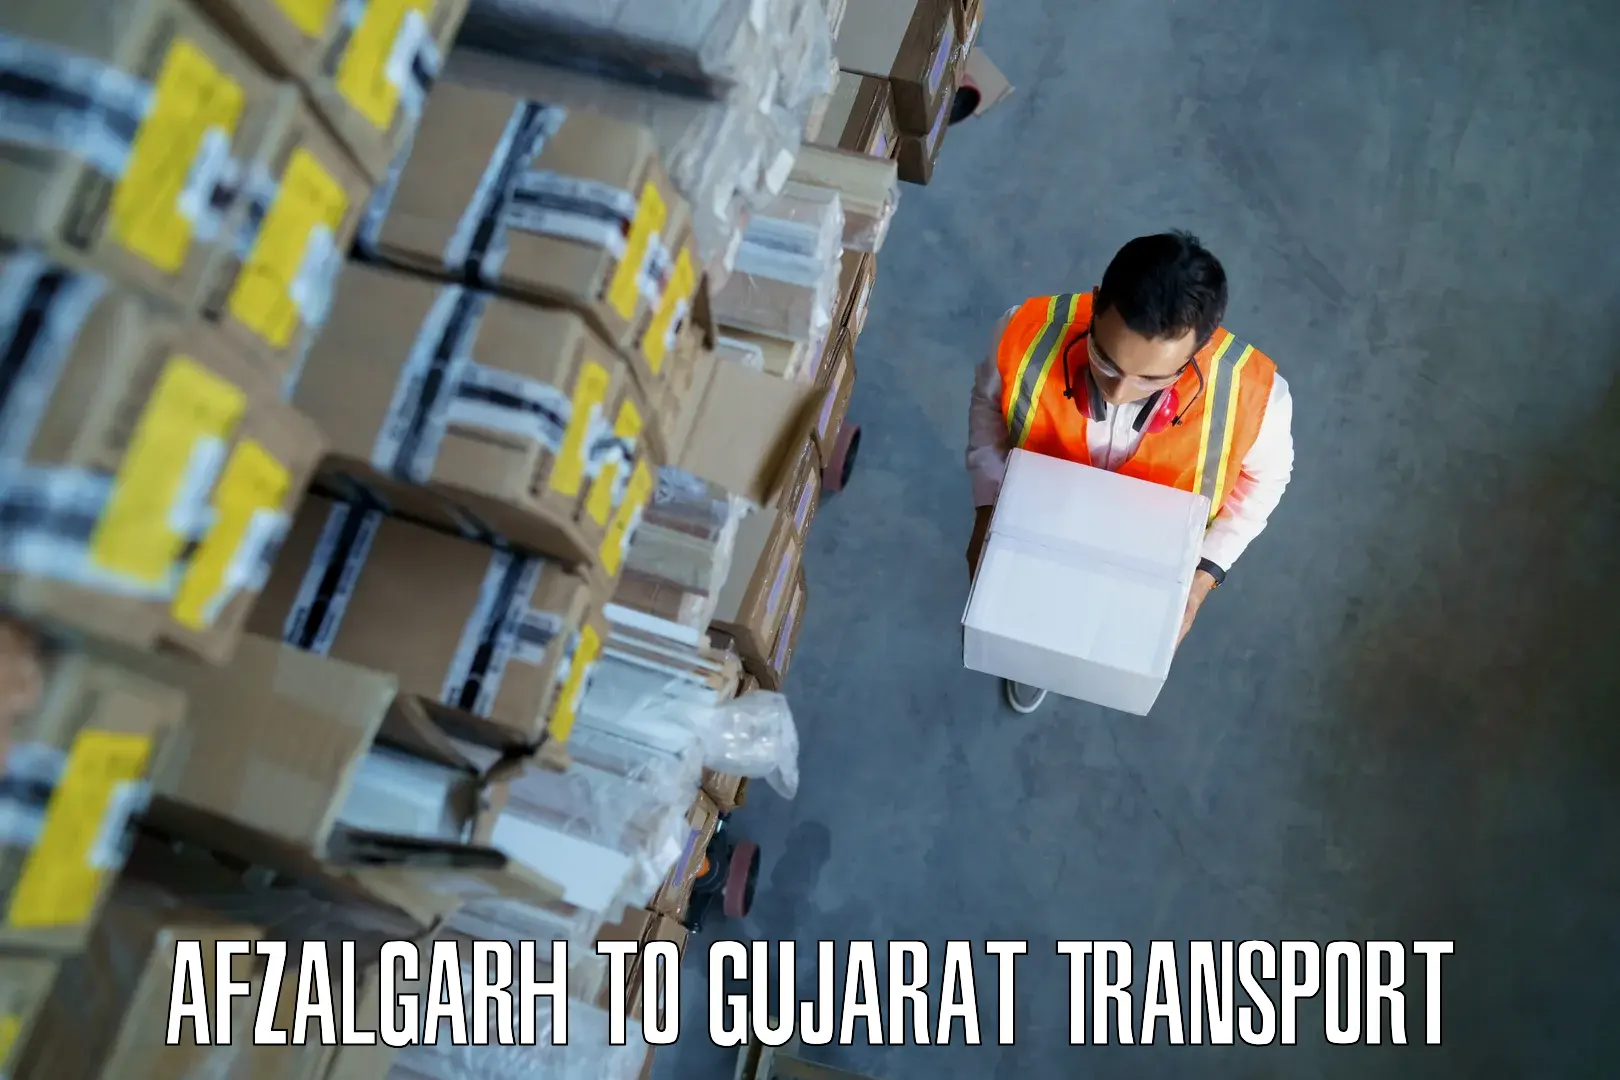 Delivery service Afzalgarh to NIT Surat